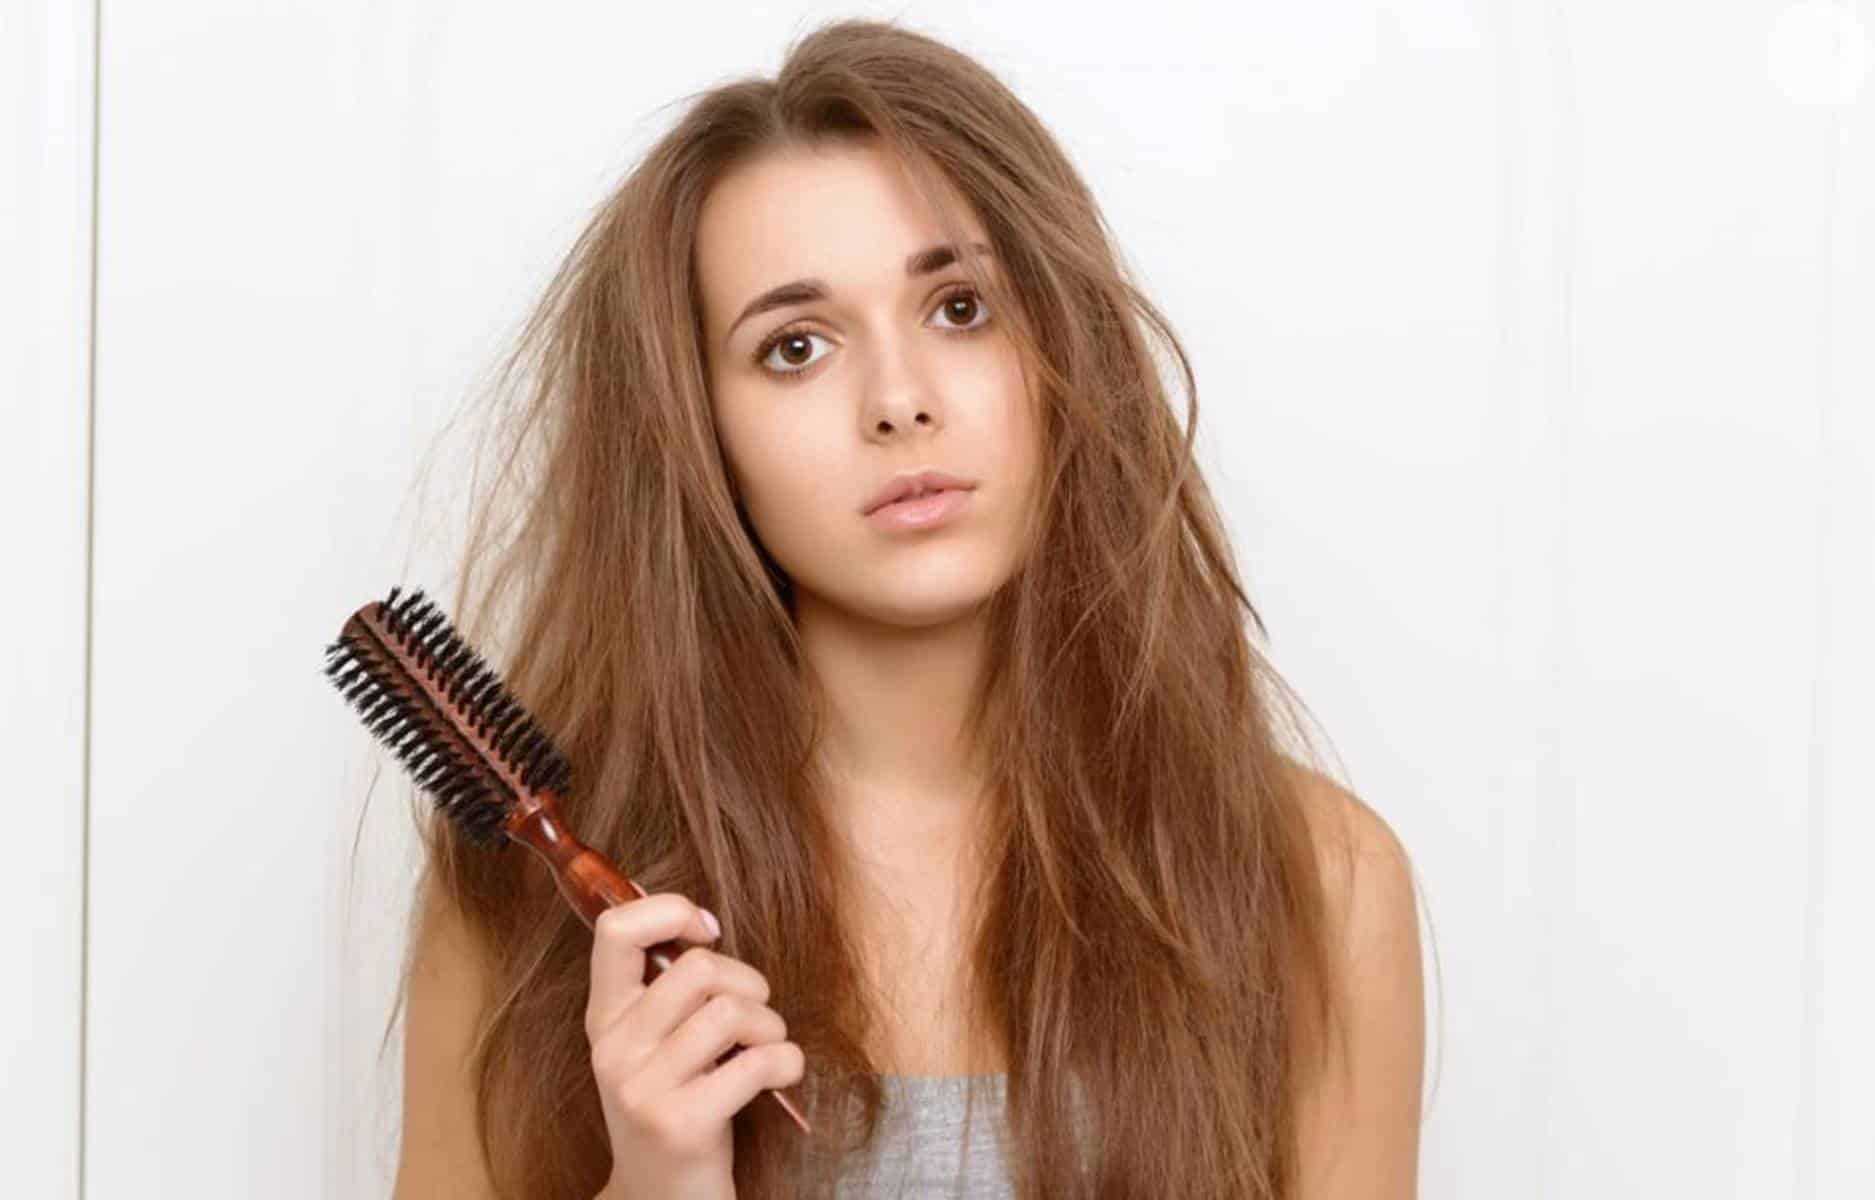 Remédios naturais para tratar a queda de cabelo em uma semana